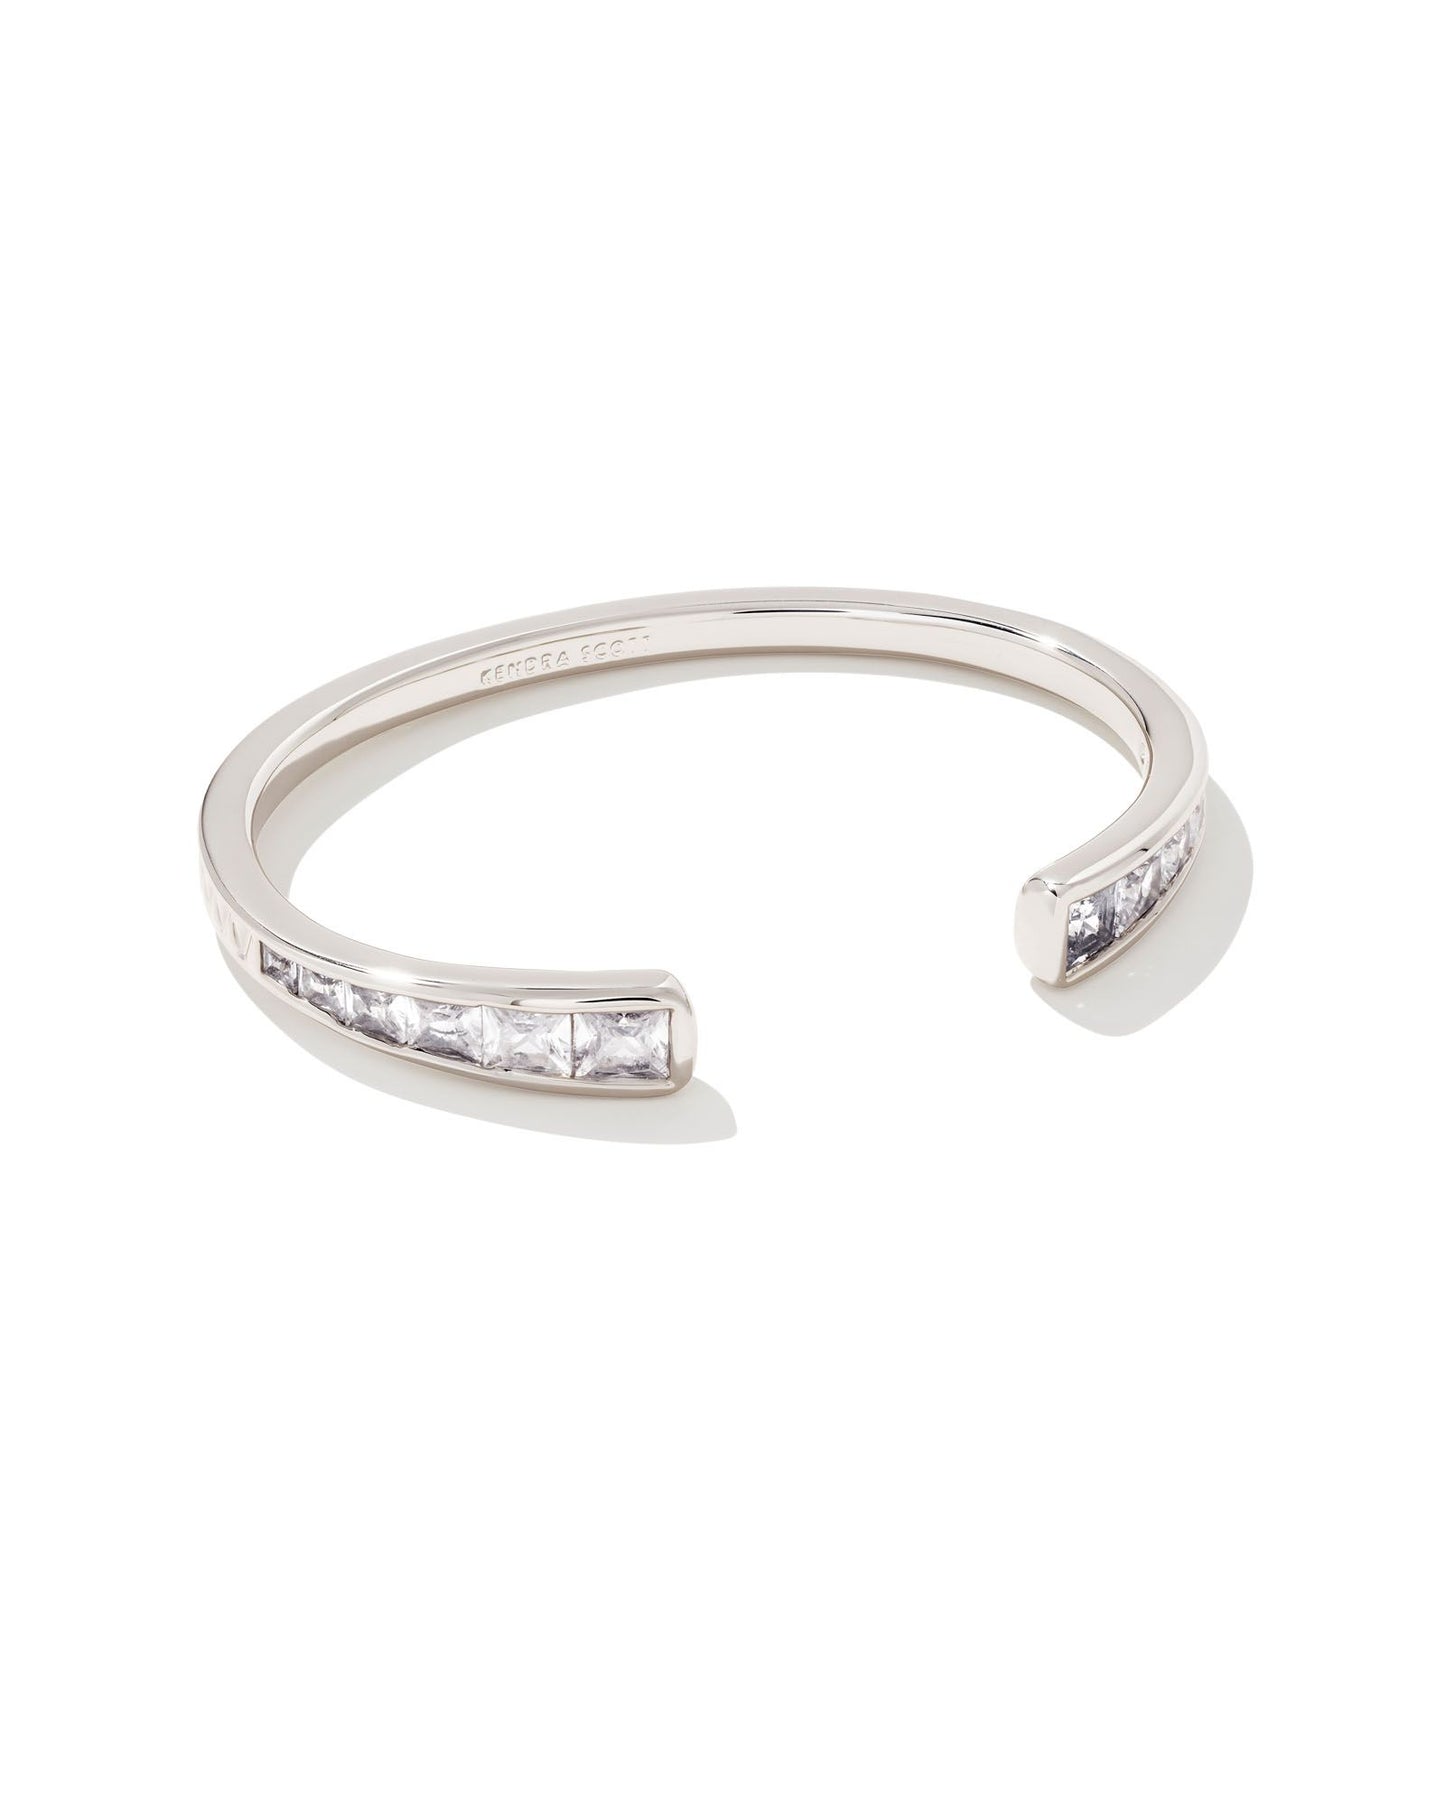 Kendra Scott Parker Cuff Bracelet Rhodium White Crystal-Bracelets-Kendra Scott-B1465RHD-The Twisted Chandelier